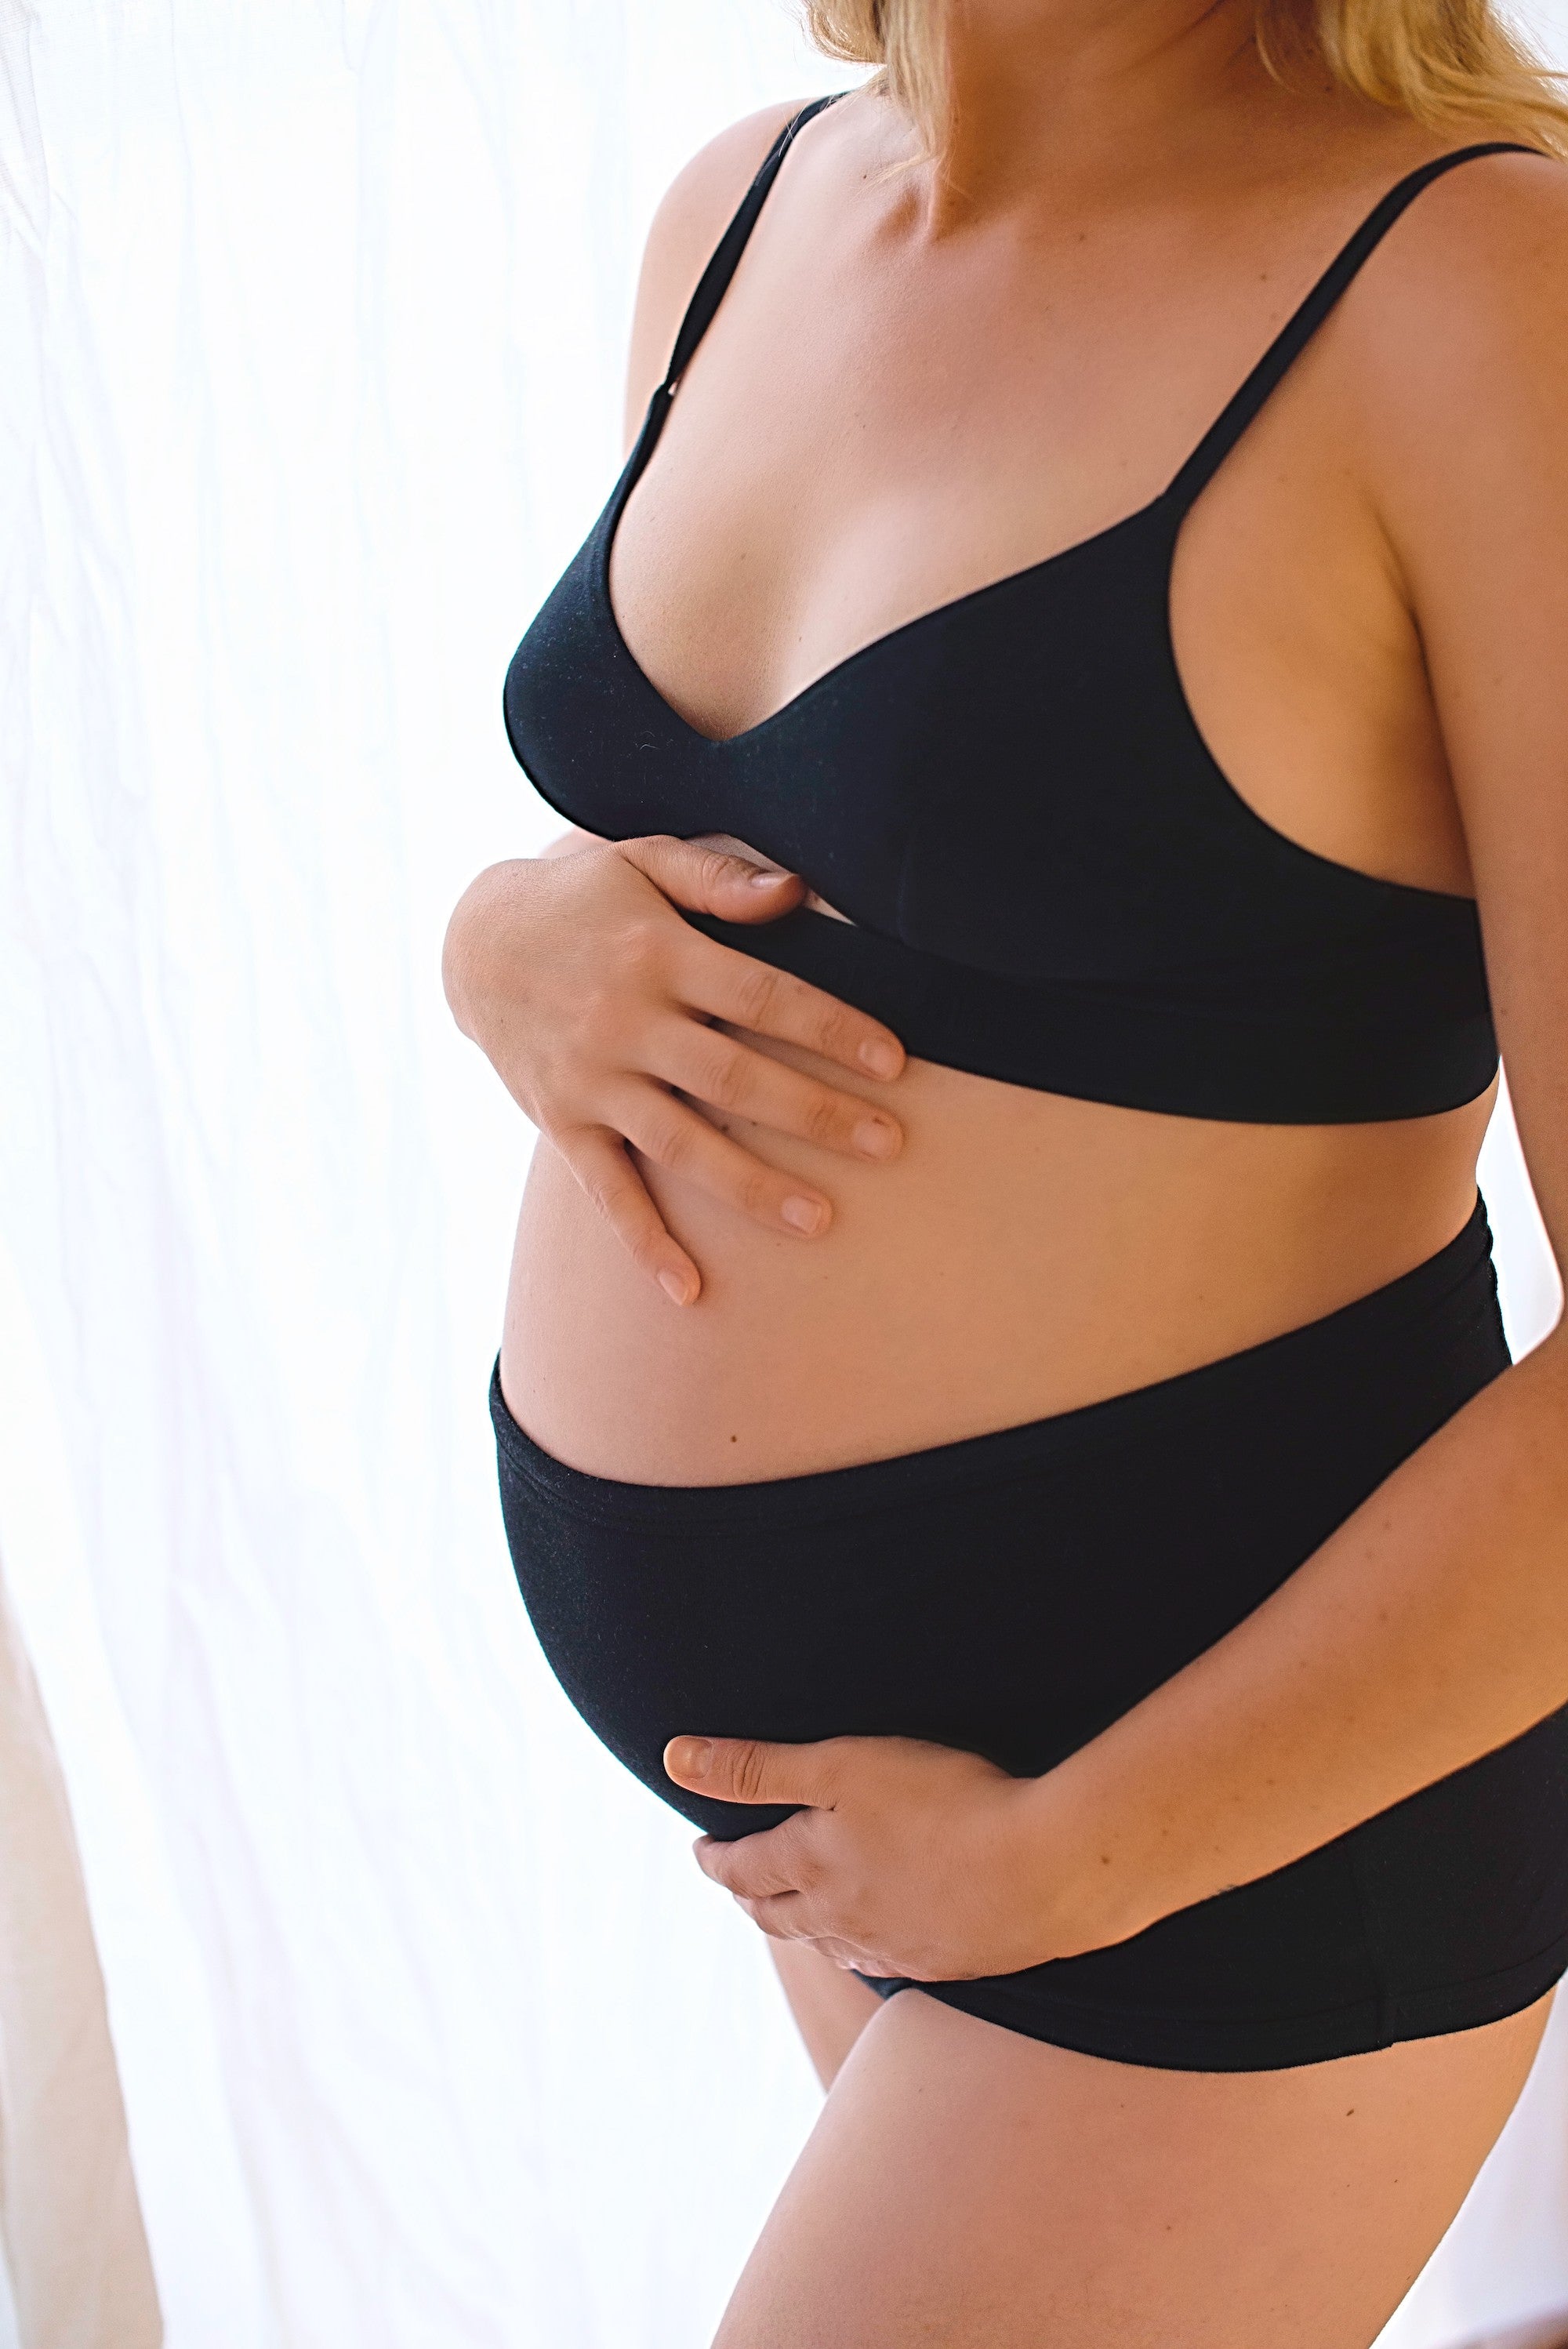 Pregnancy & Postpartum Highrise Undies in Midnight